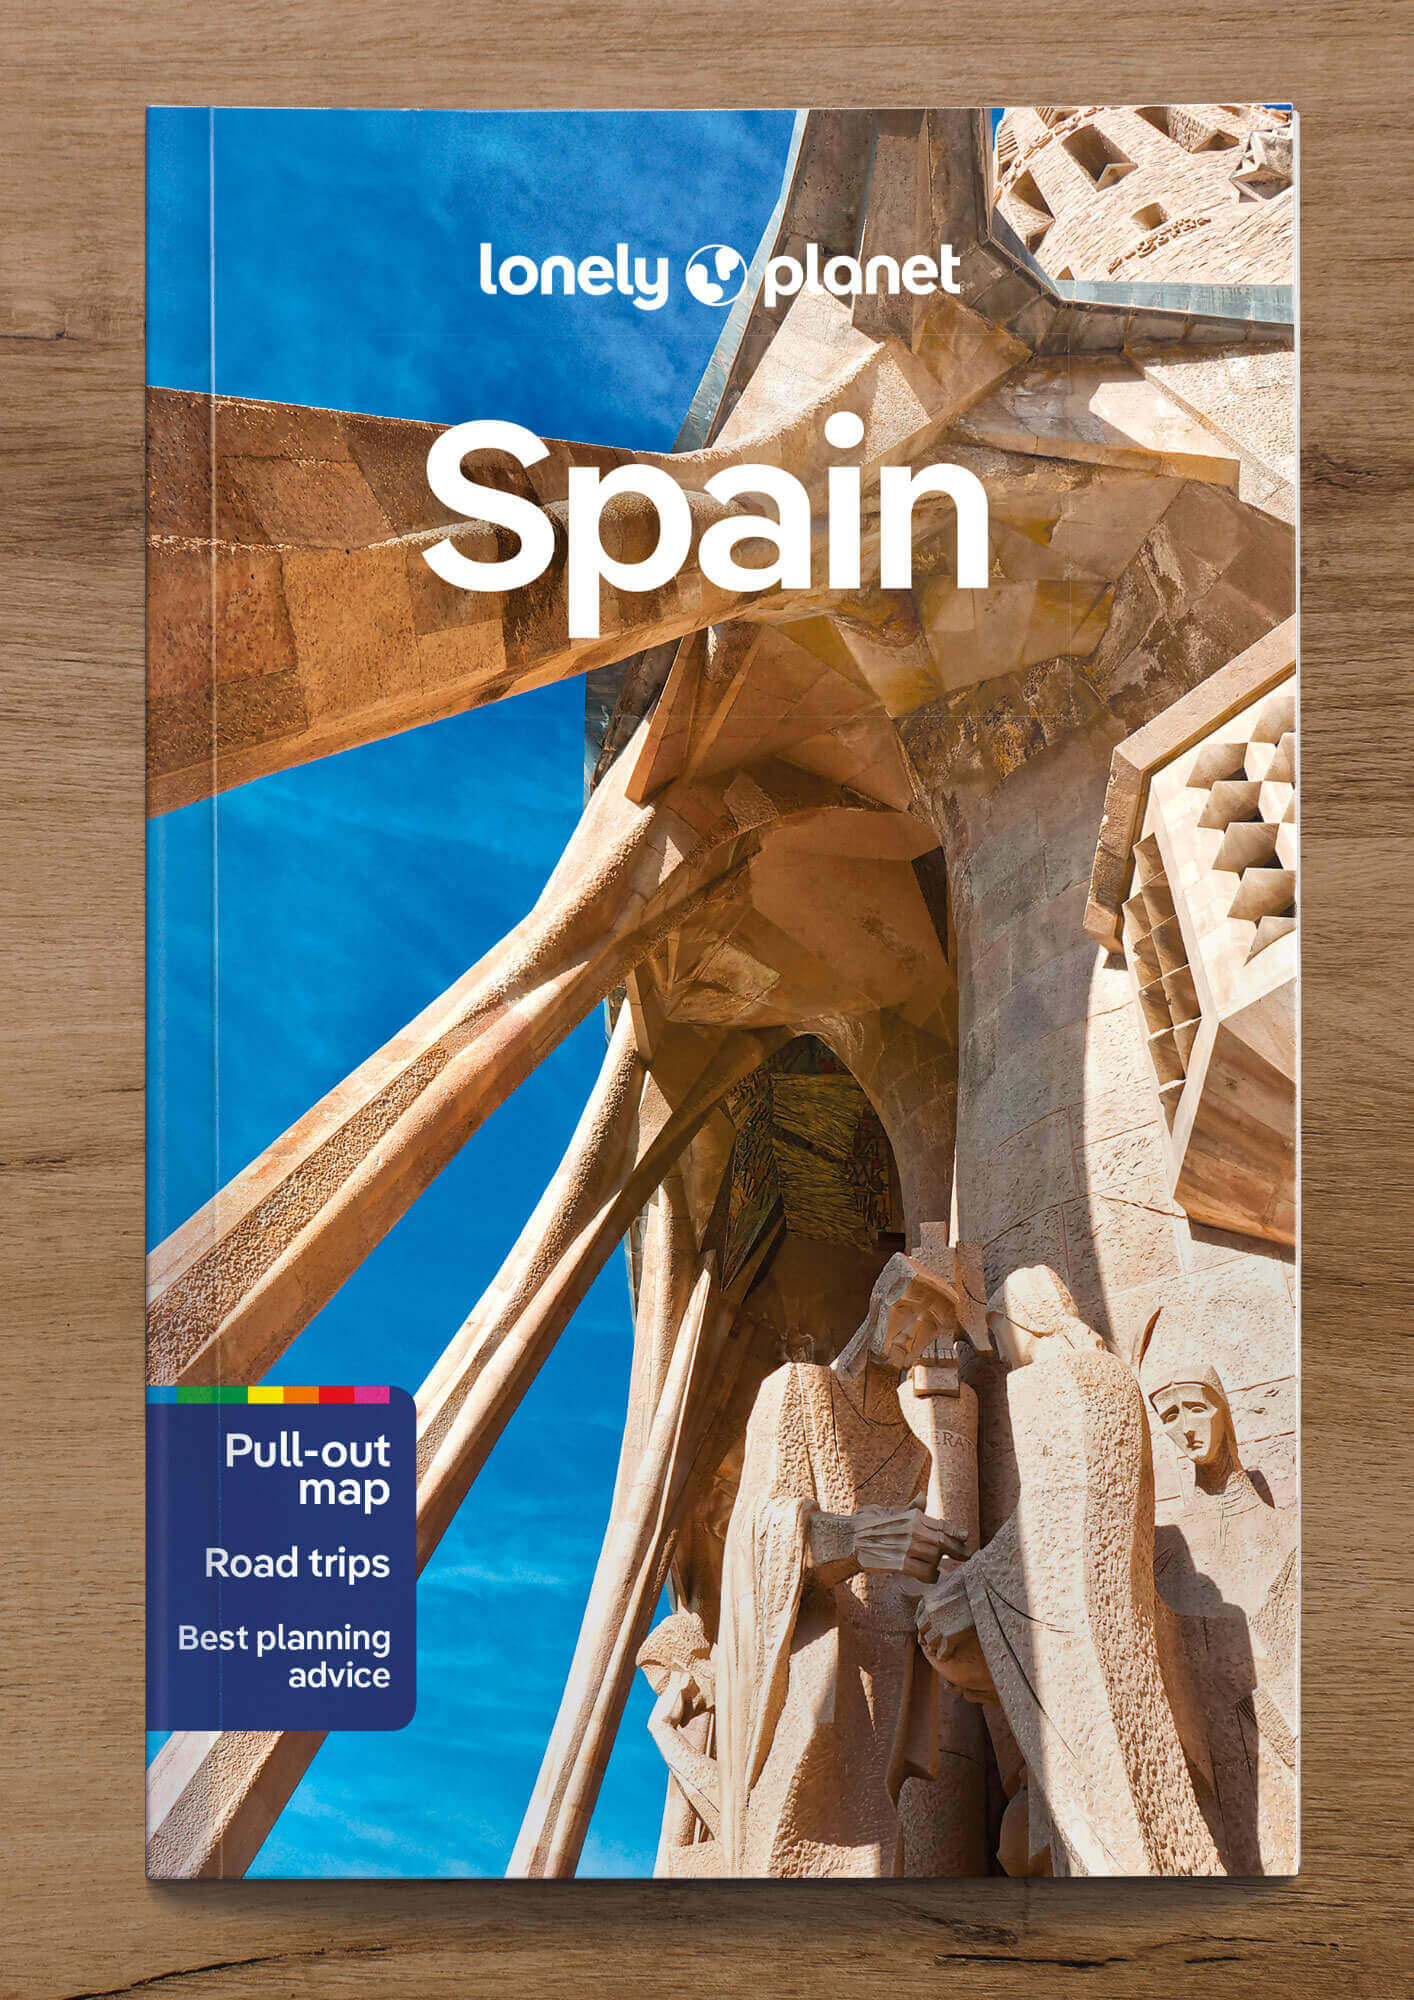  Bestselling Lonelyplanet ebook bundle - Spain